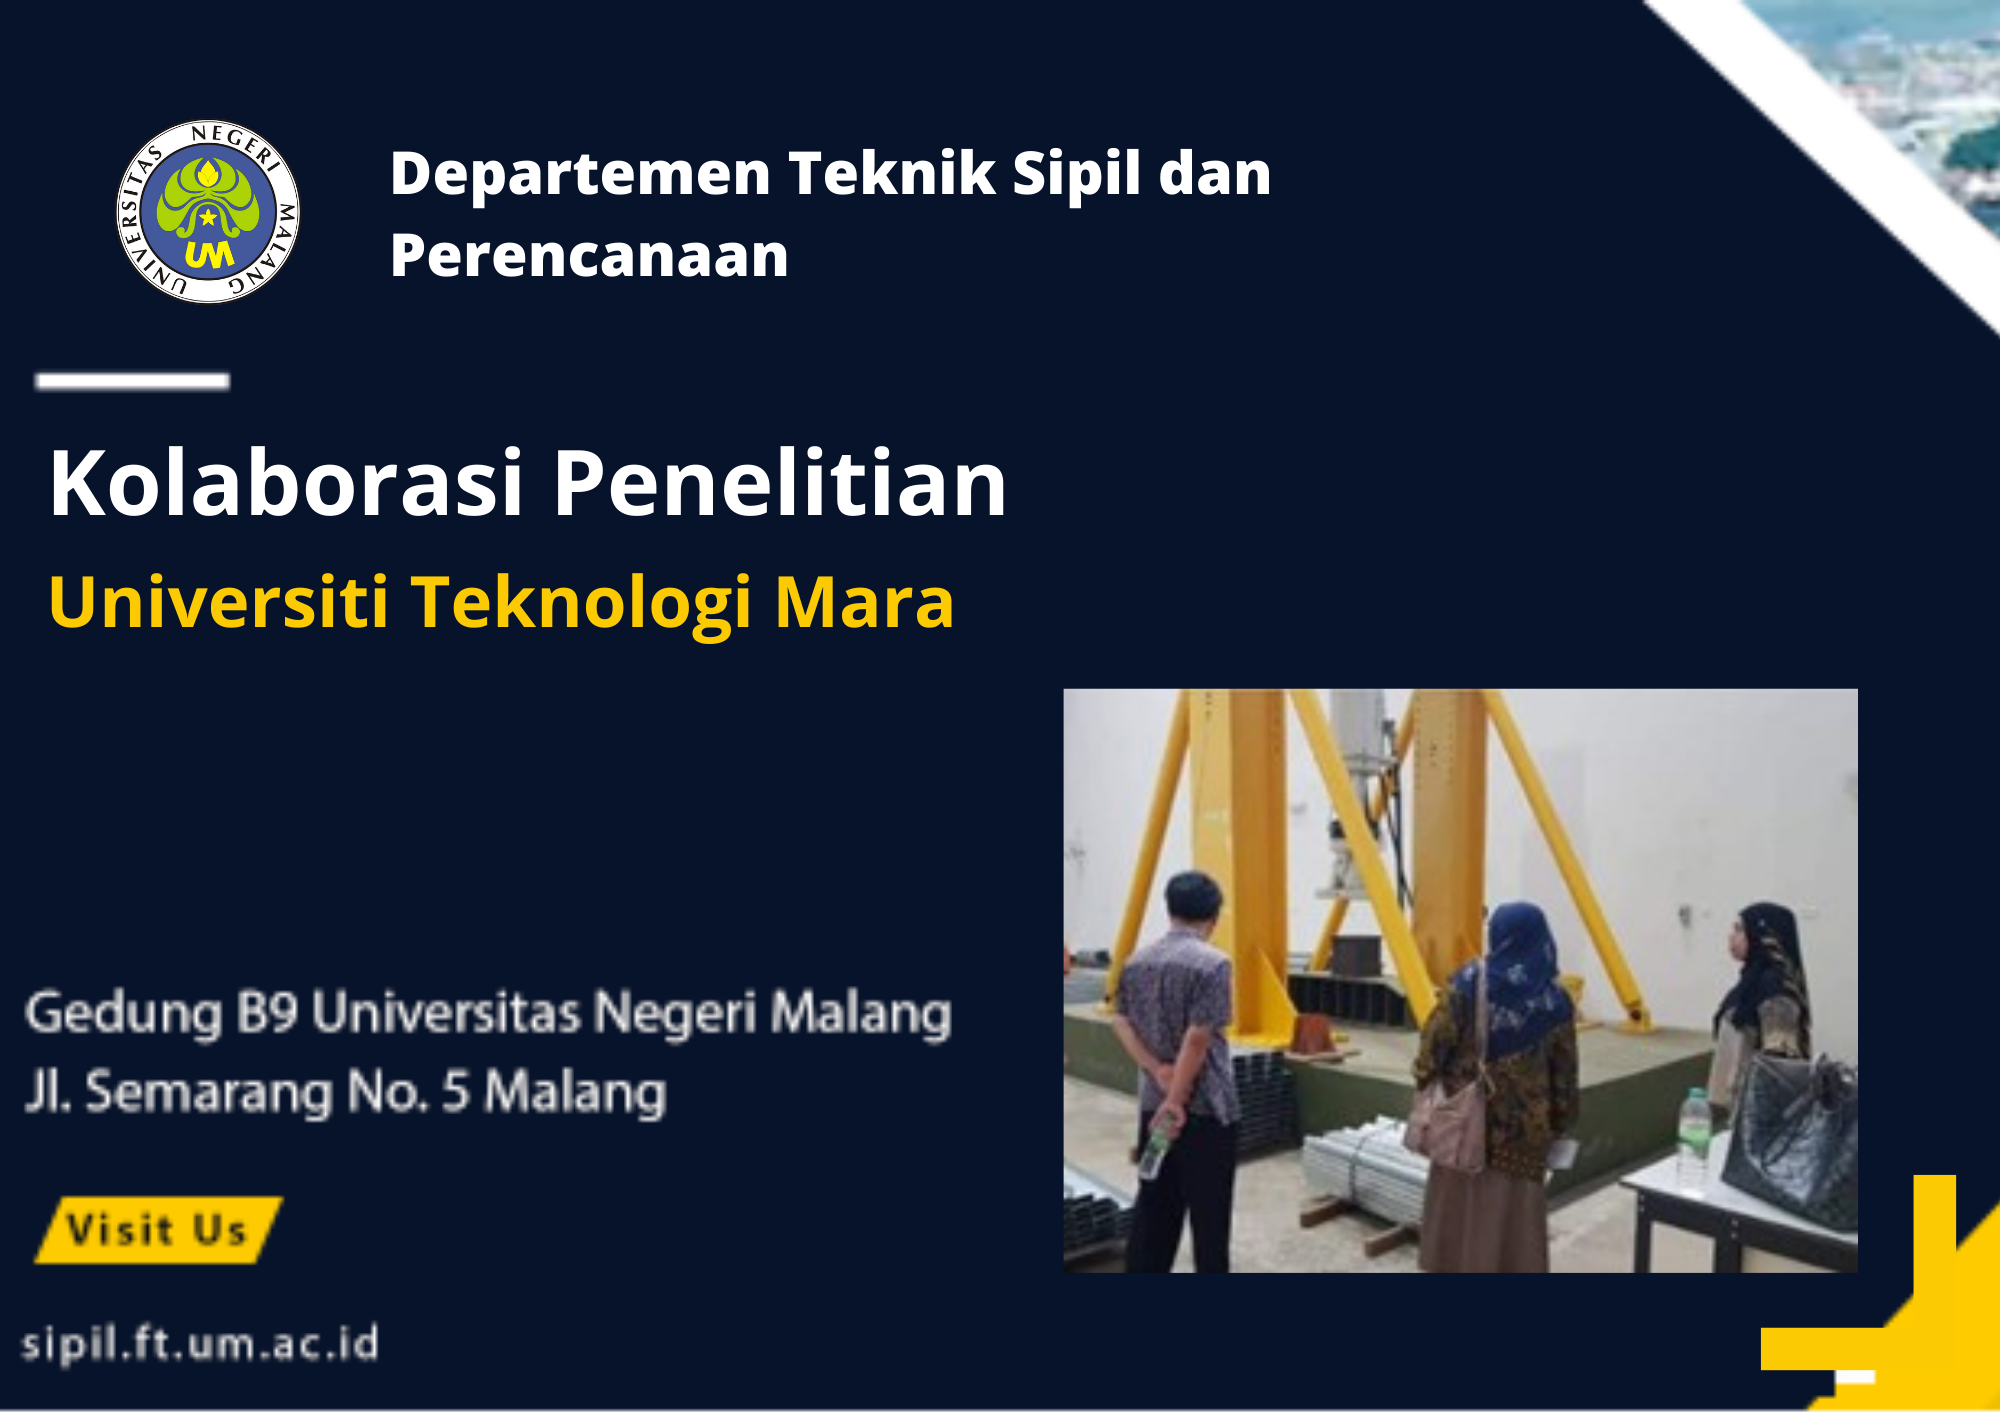 Kegiatan Kolaborasi Penelitian dengan Universiti Teknologi Mara – Malaysia